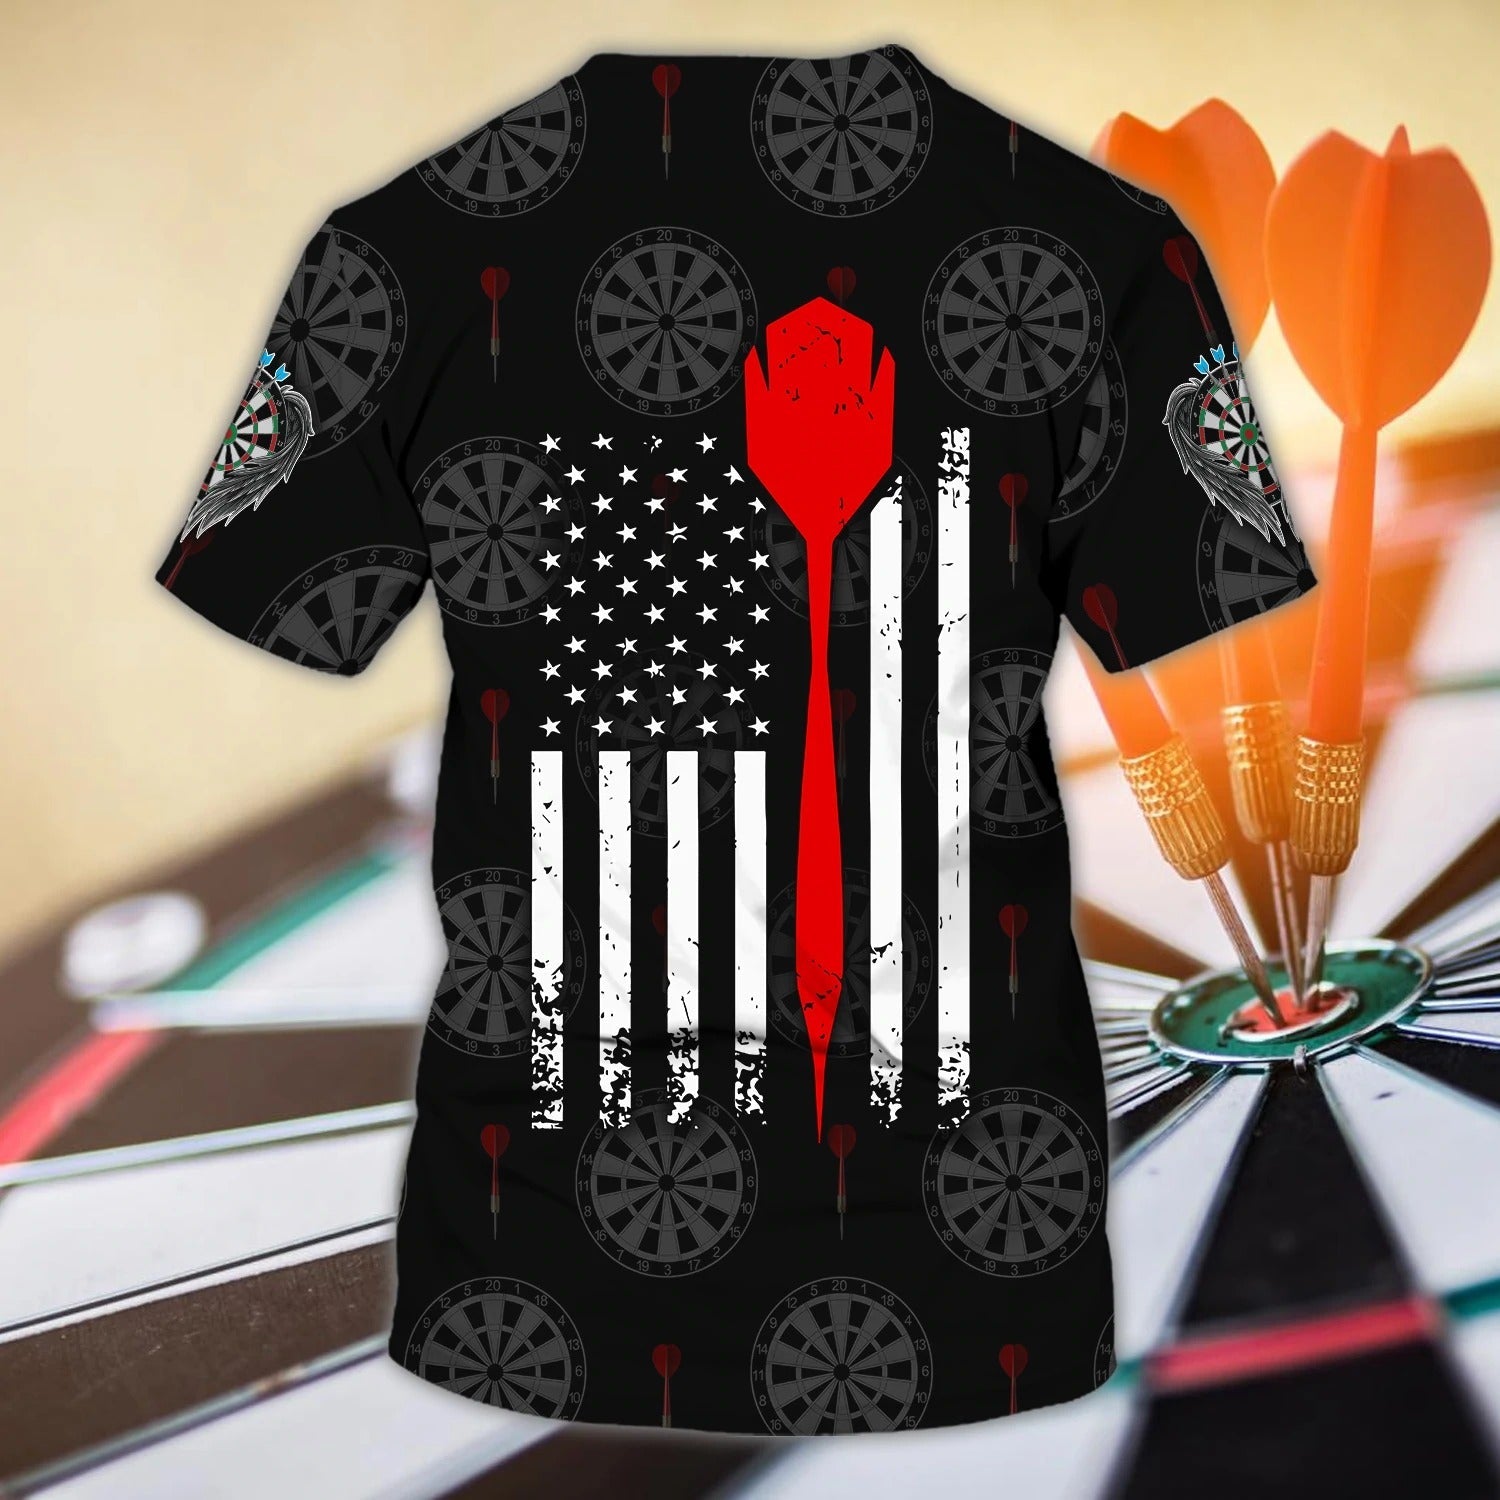 Custom 3D Full Print Dart Shirt For Men And Women/ Premium Dart On Shirt/ Best Gift For A Dart Player